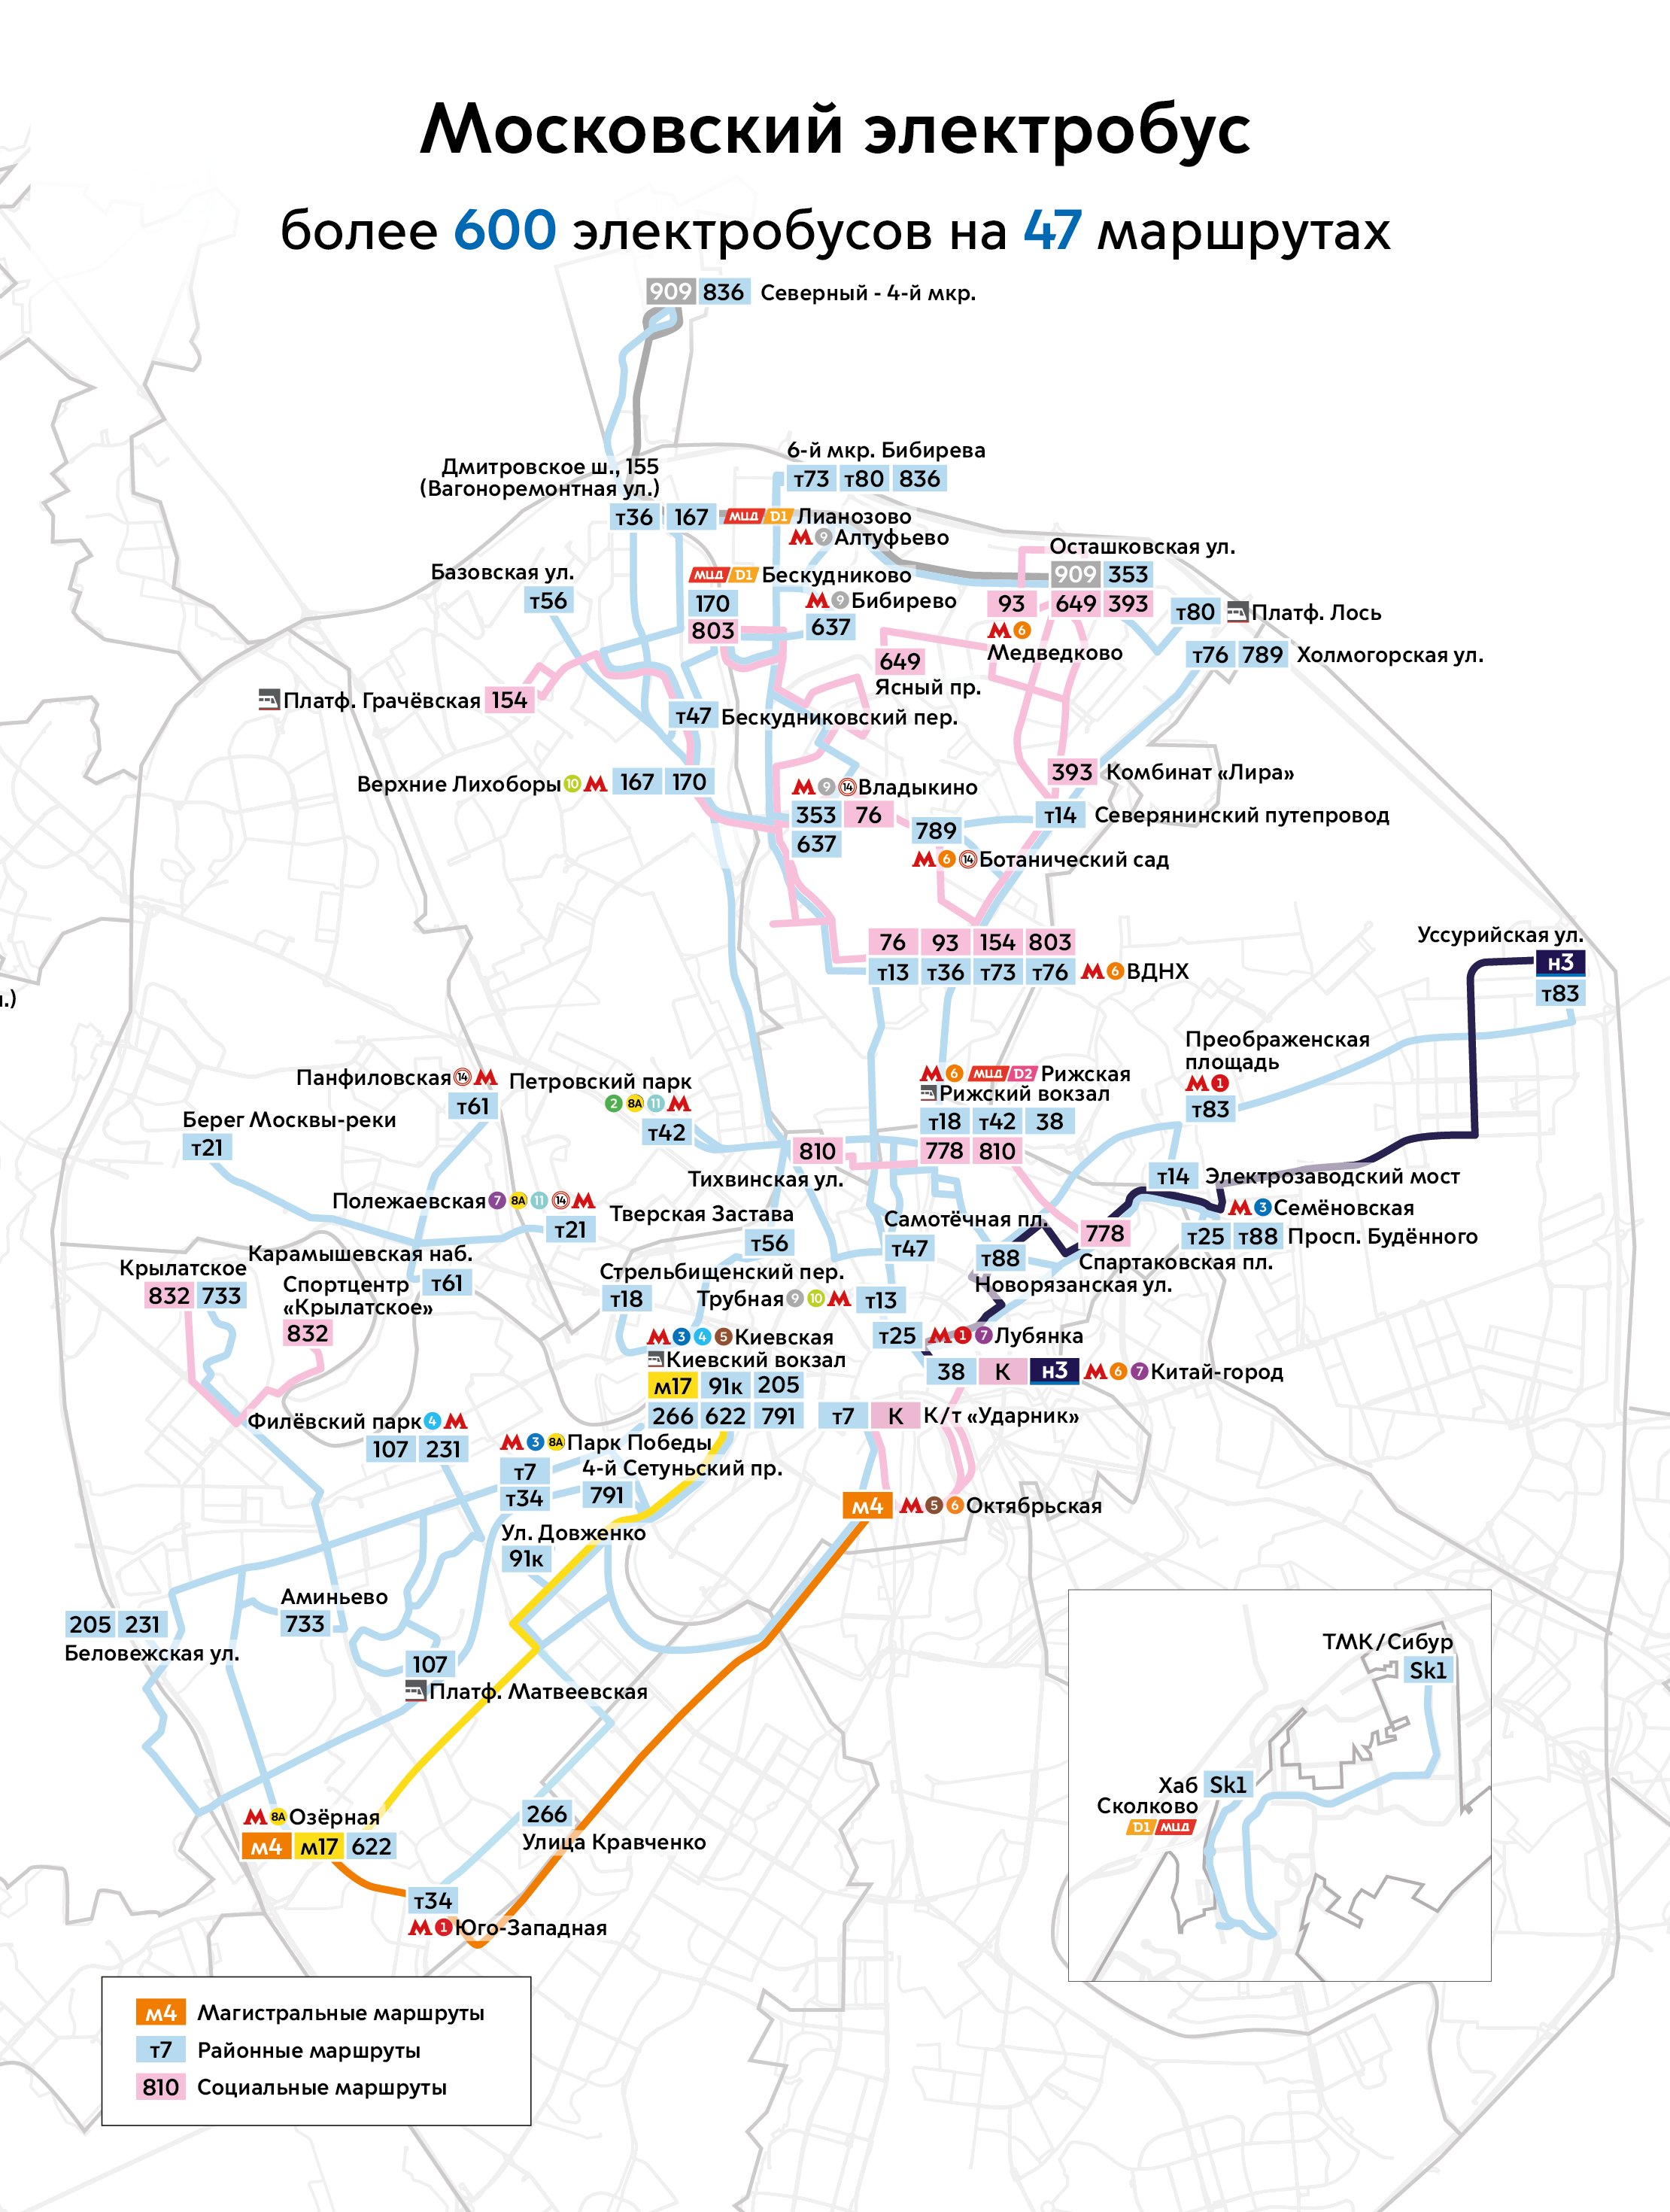 Maskava — Maps of Autonomous Electric Bus Lines